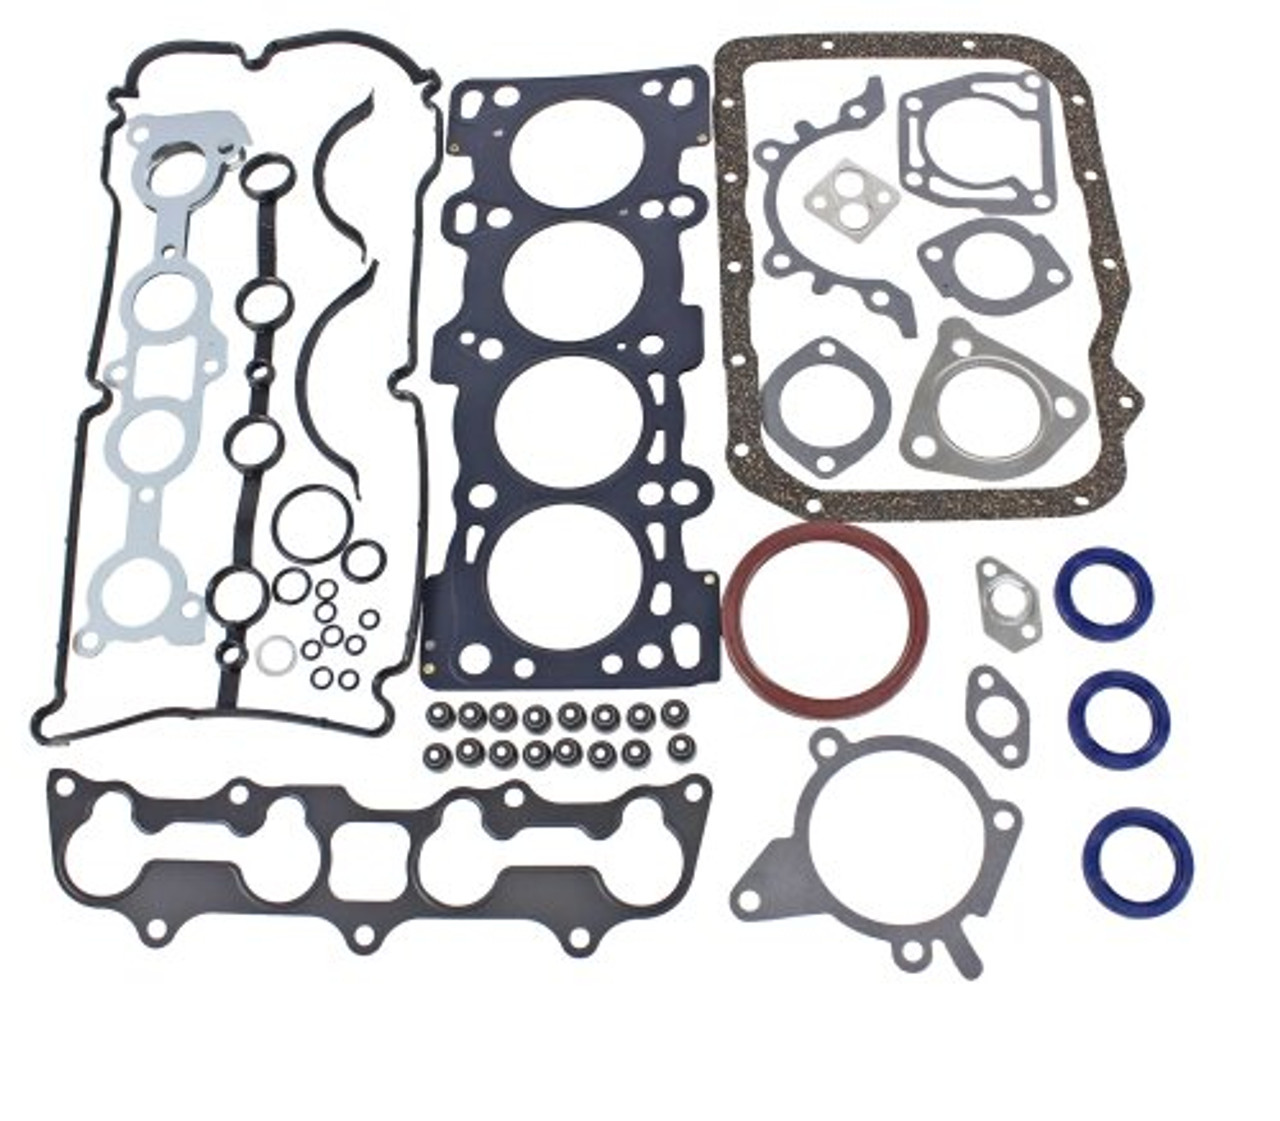 Full Gasket Set - 1998 Mazda Protege 1.5L Engine Parts # FGS4033ZE4